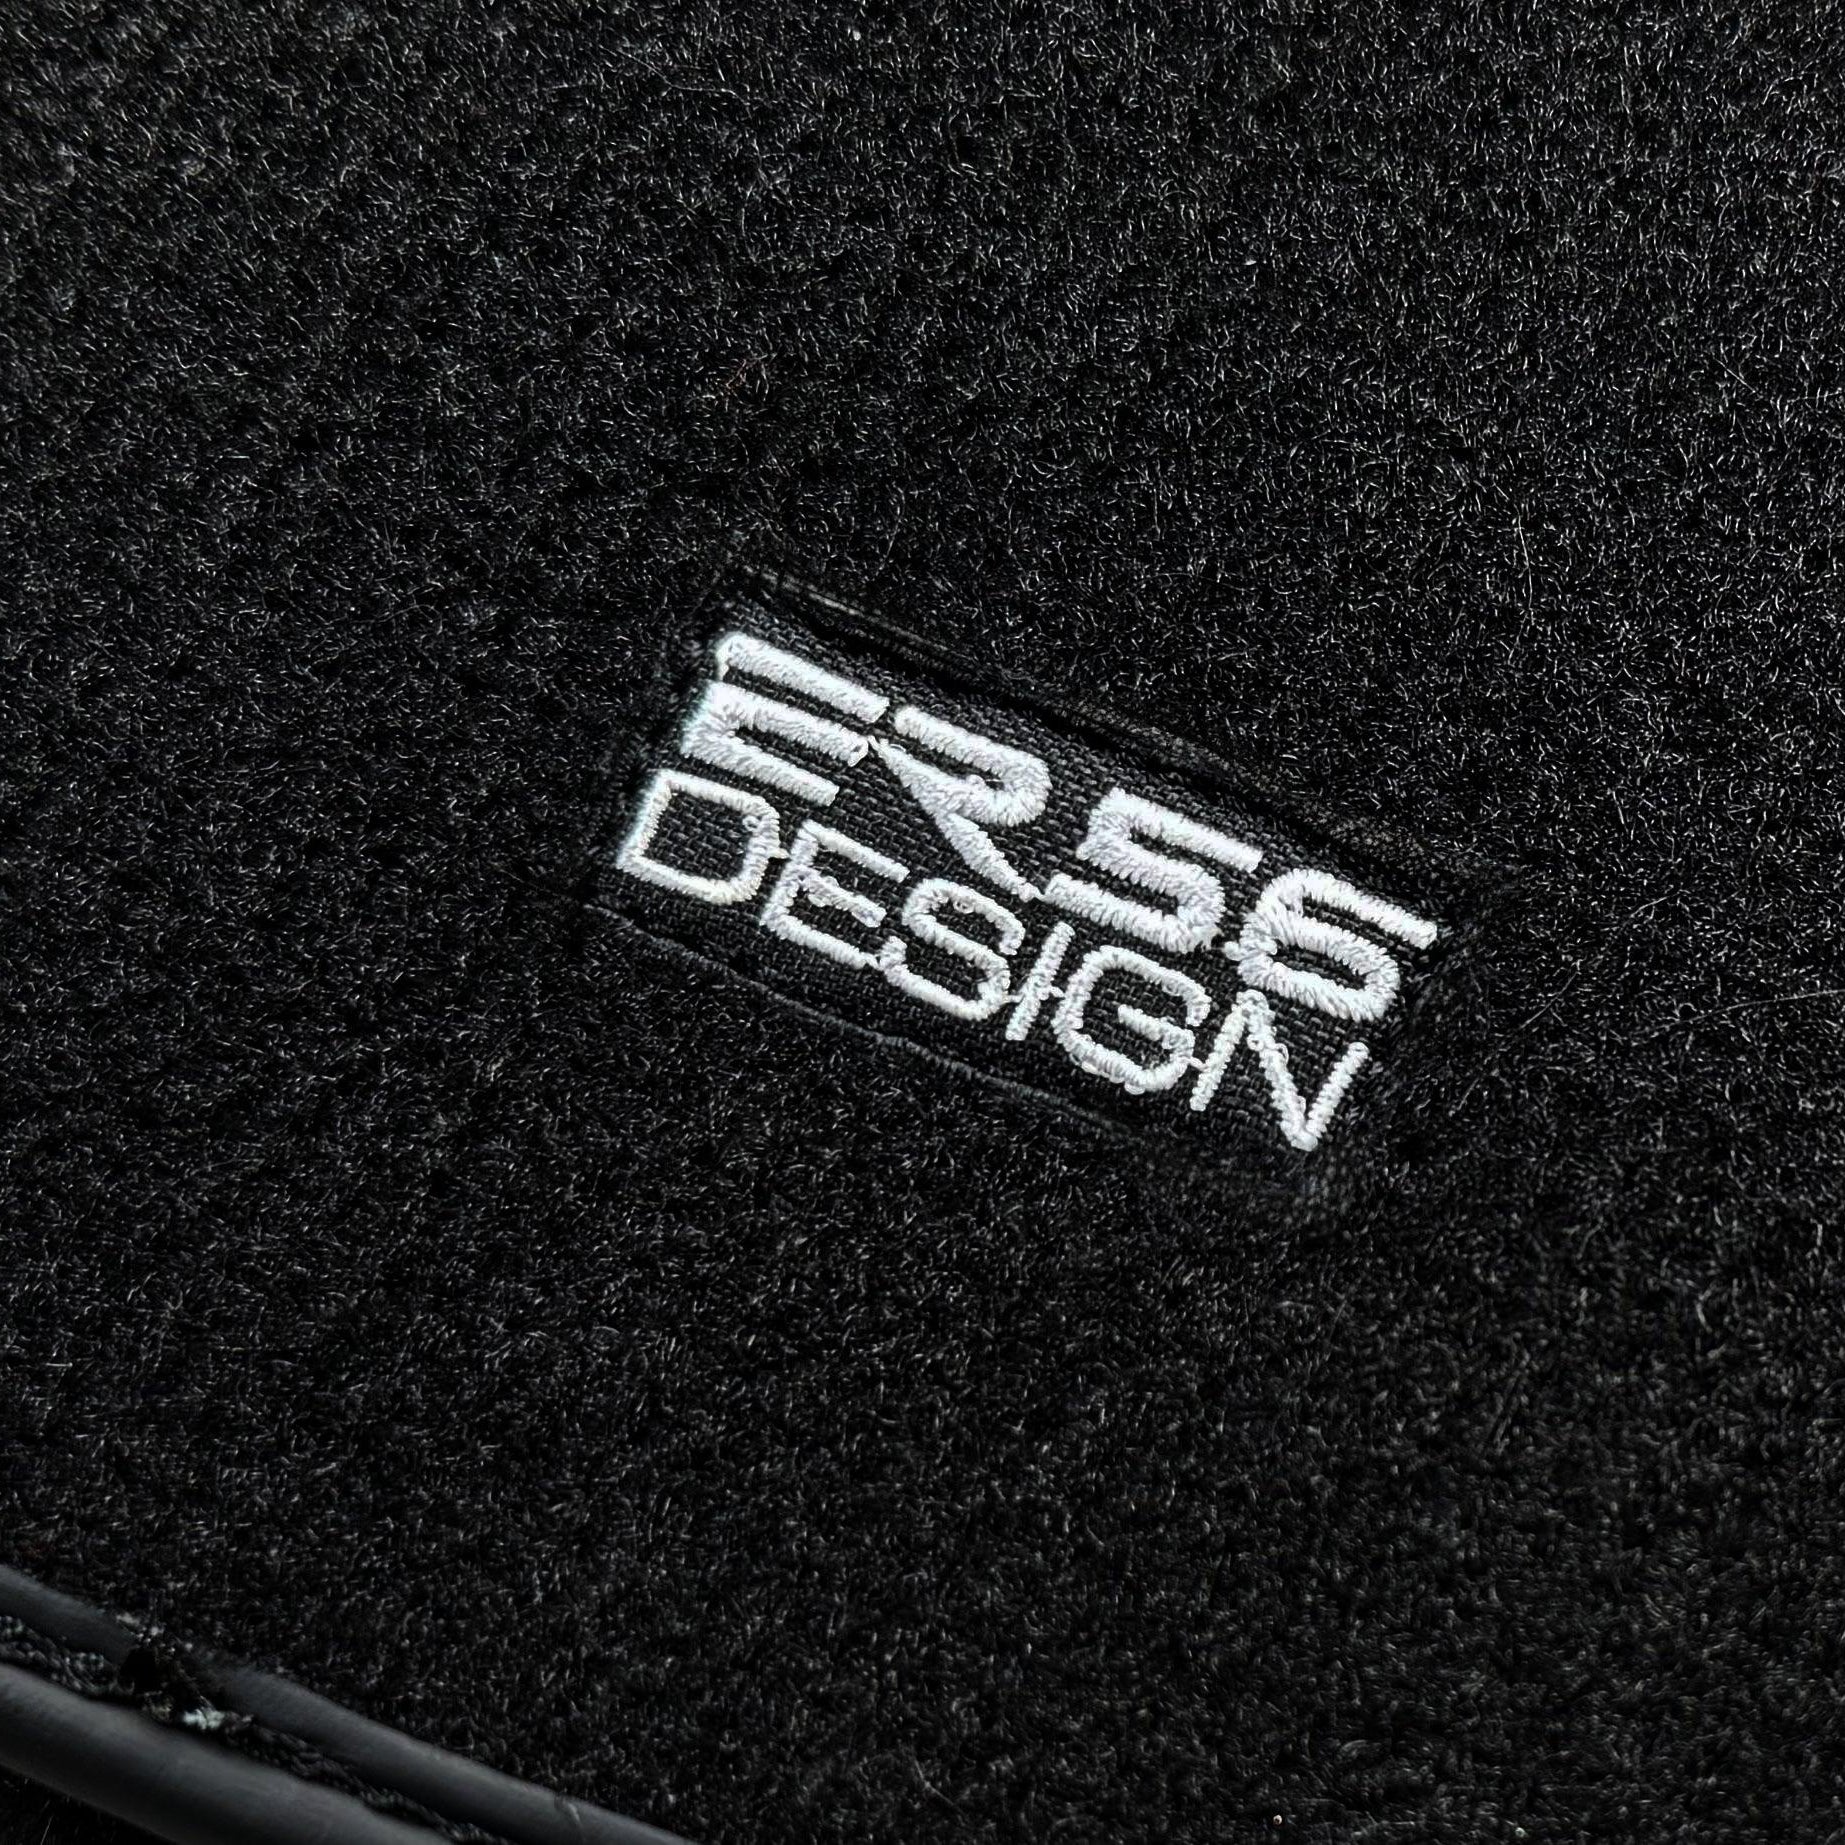 Black Sheepskin Floor Floor Mats For BMW 1 Series E87 ER56 Design